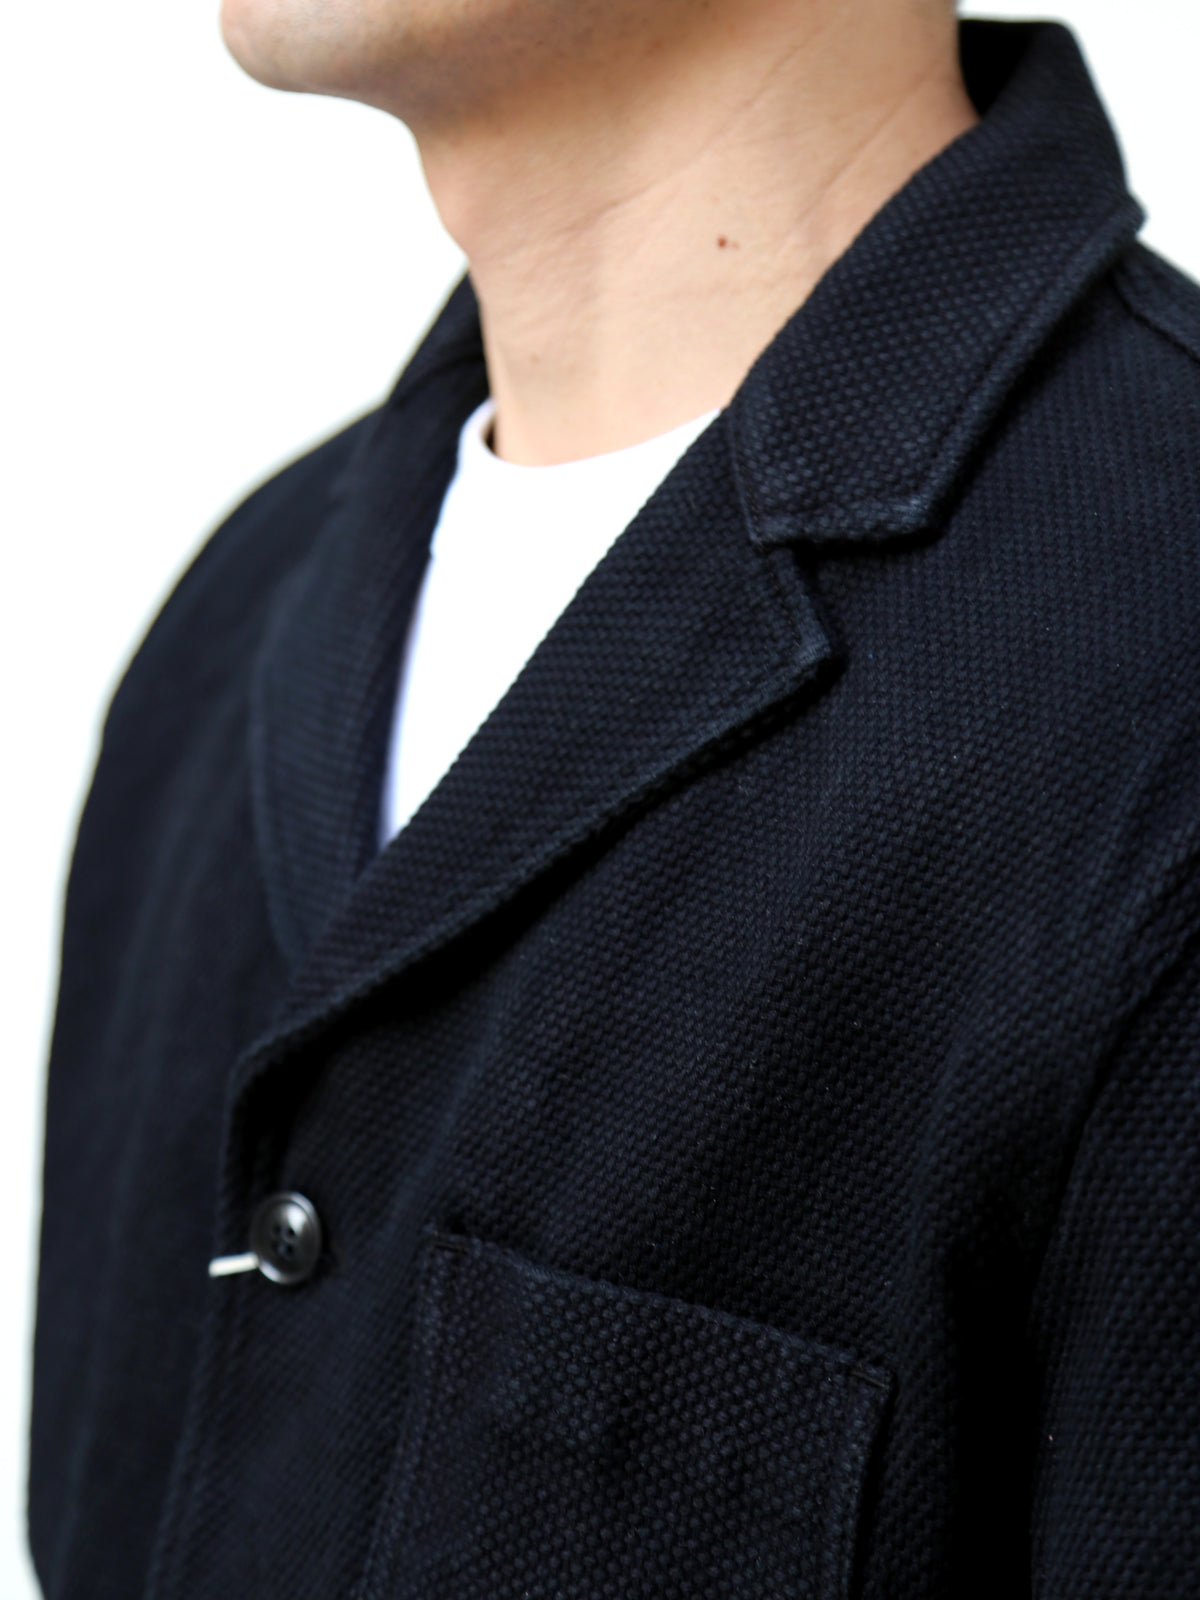 Studio d'Artisan Kurozome Selvedge Sashiko Tailored Jaket – Black (4572)